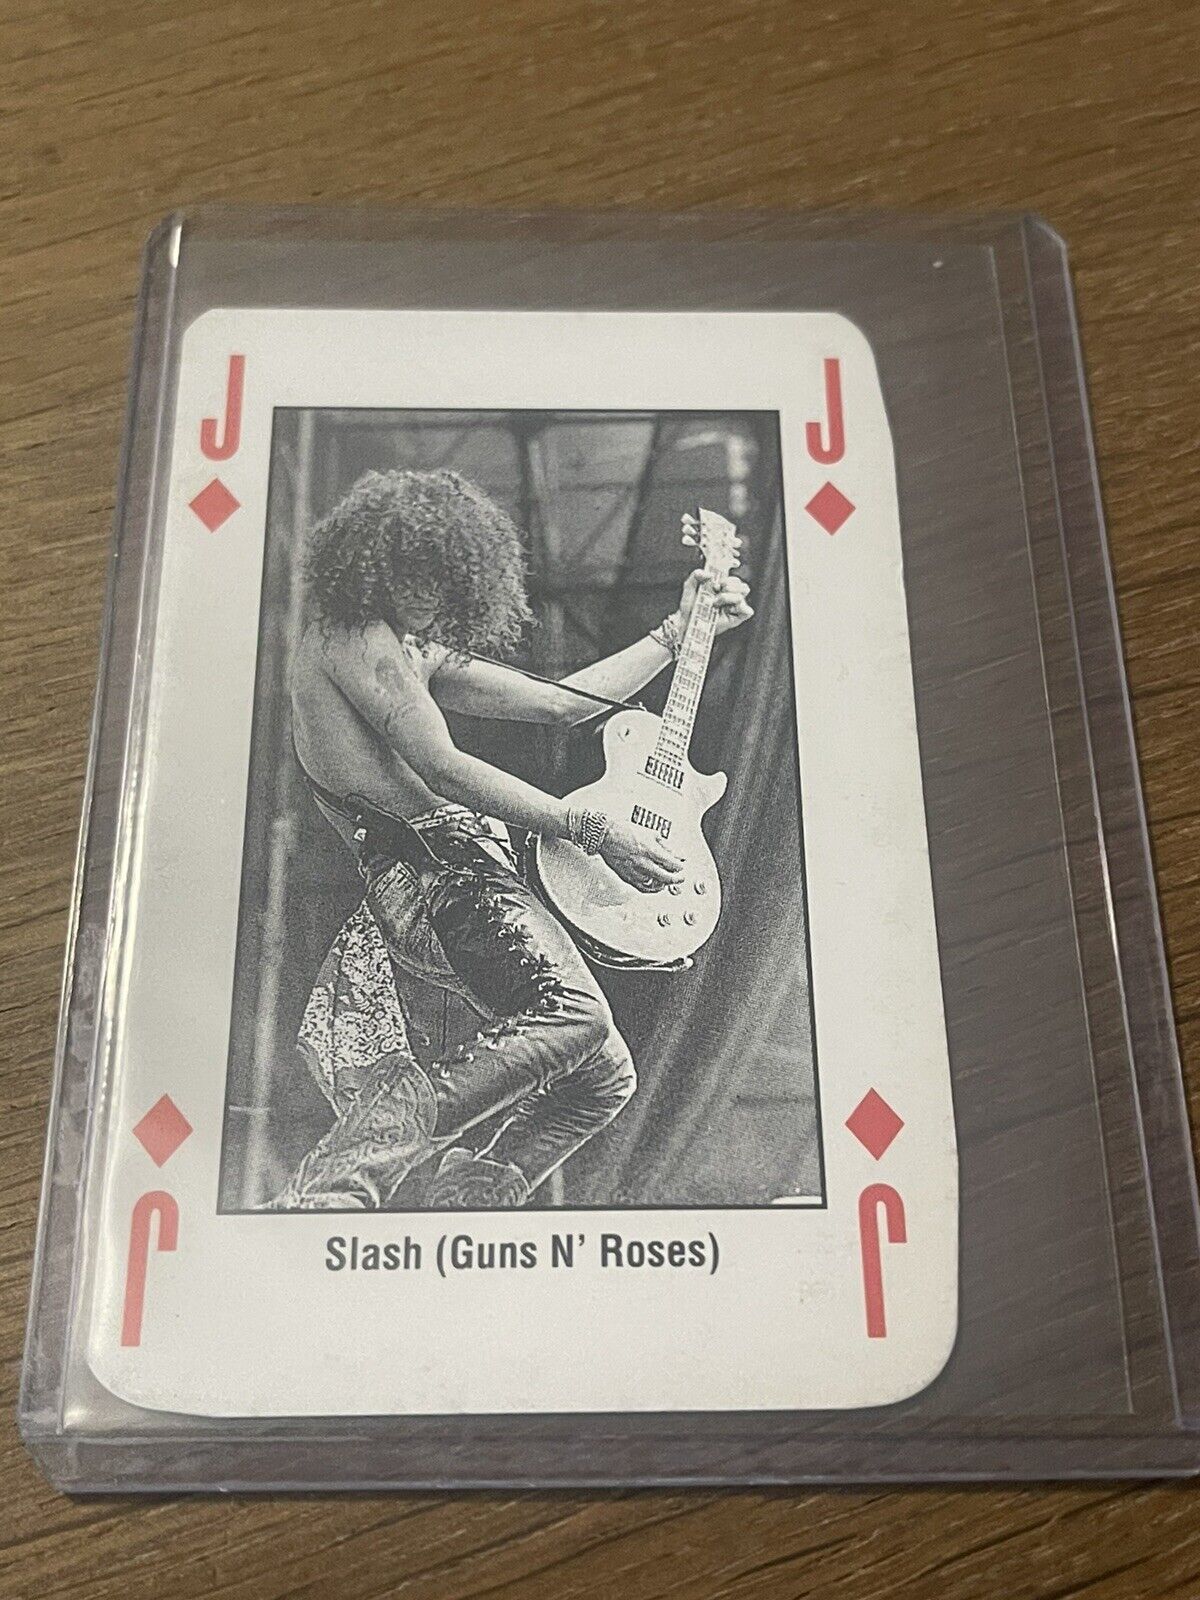 1993 Kerrang Music Card King of Metal Playing Cards Guns N’ Roses Slash Card